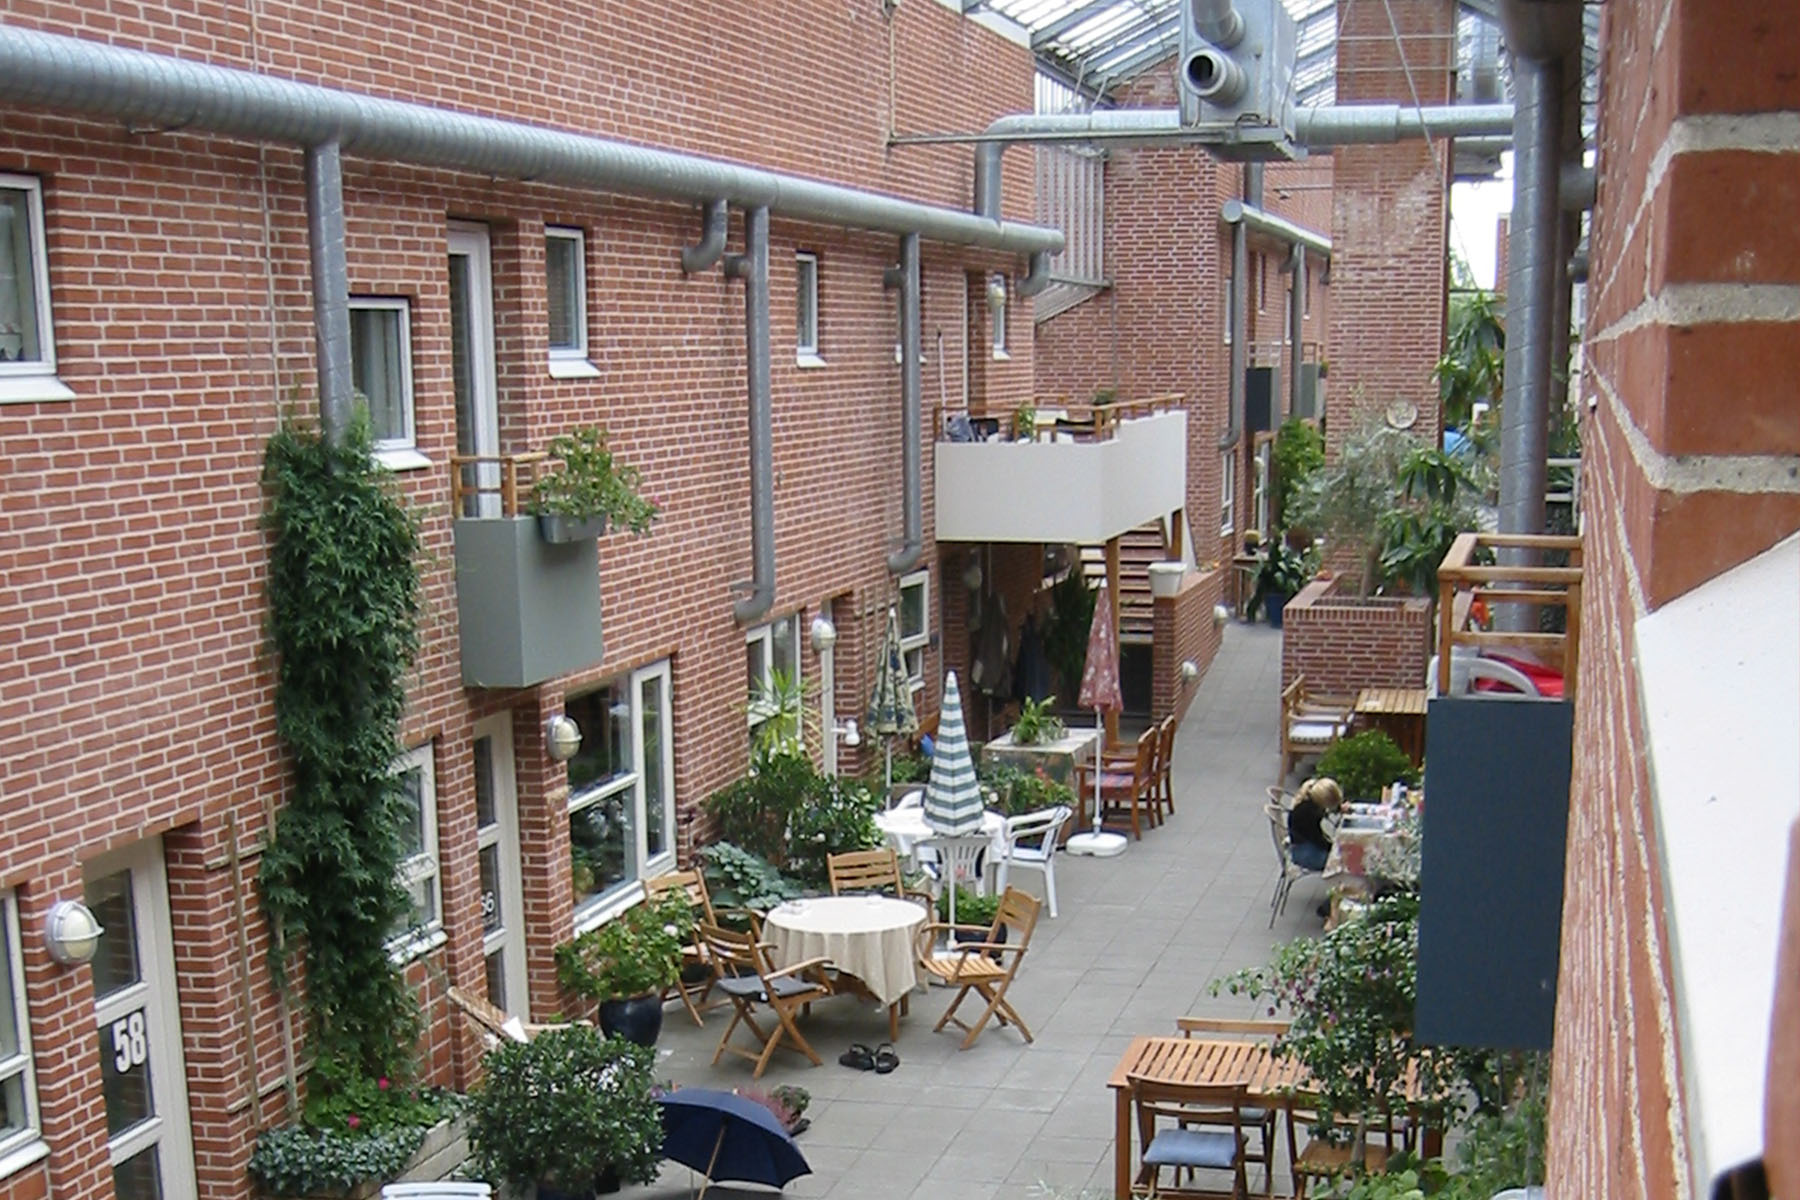   Drivhuset Cohousing  in Randers, DK. Designed by Niels Madsen 